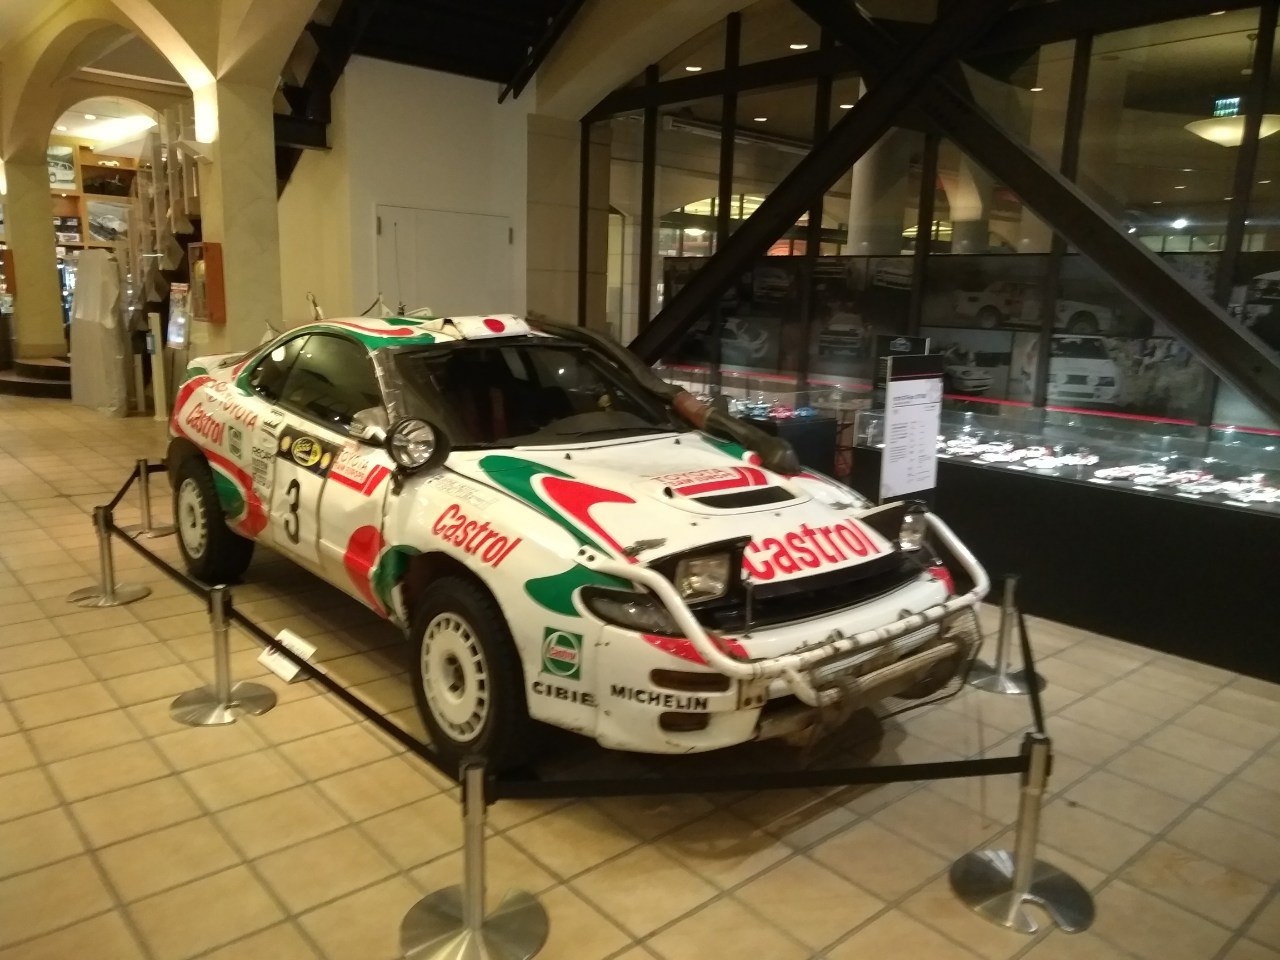 Машина с историчиской выставки Toyota